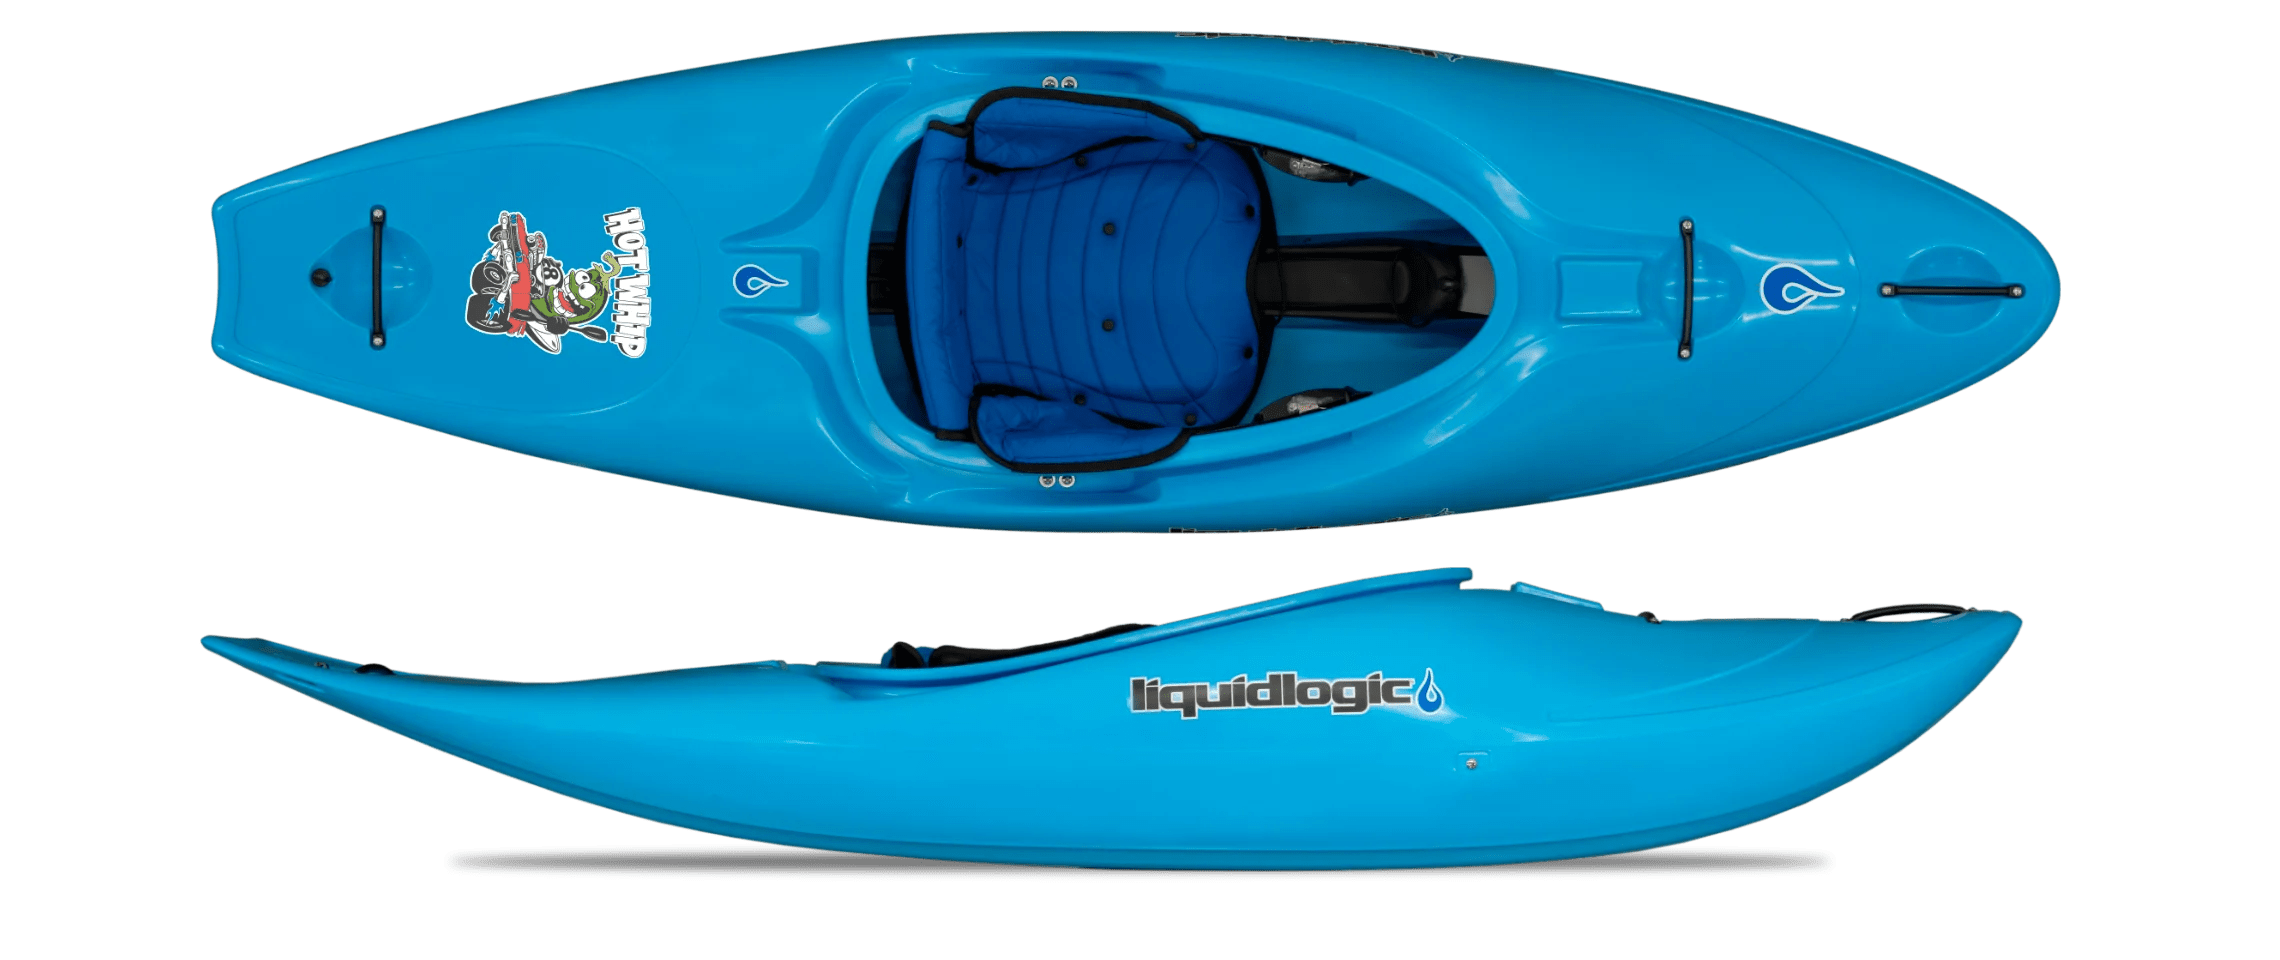 Liquidlogic Hot Whip 60 Whitewater Kayak